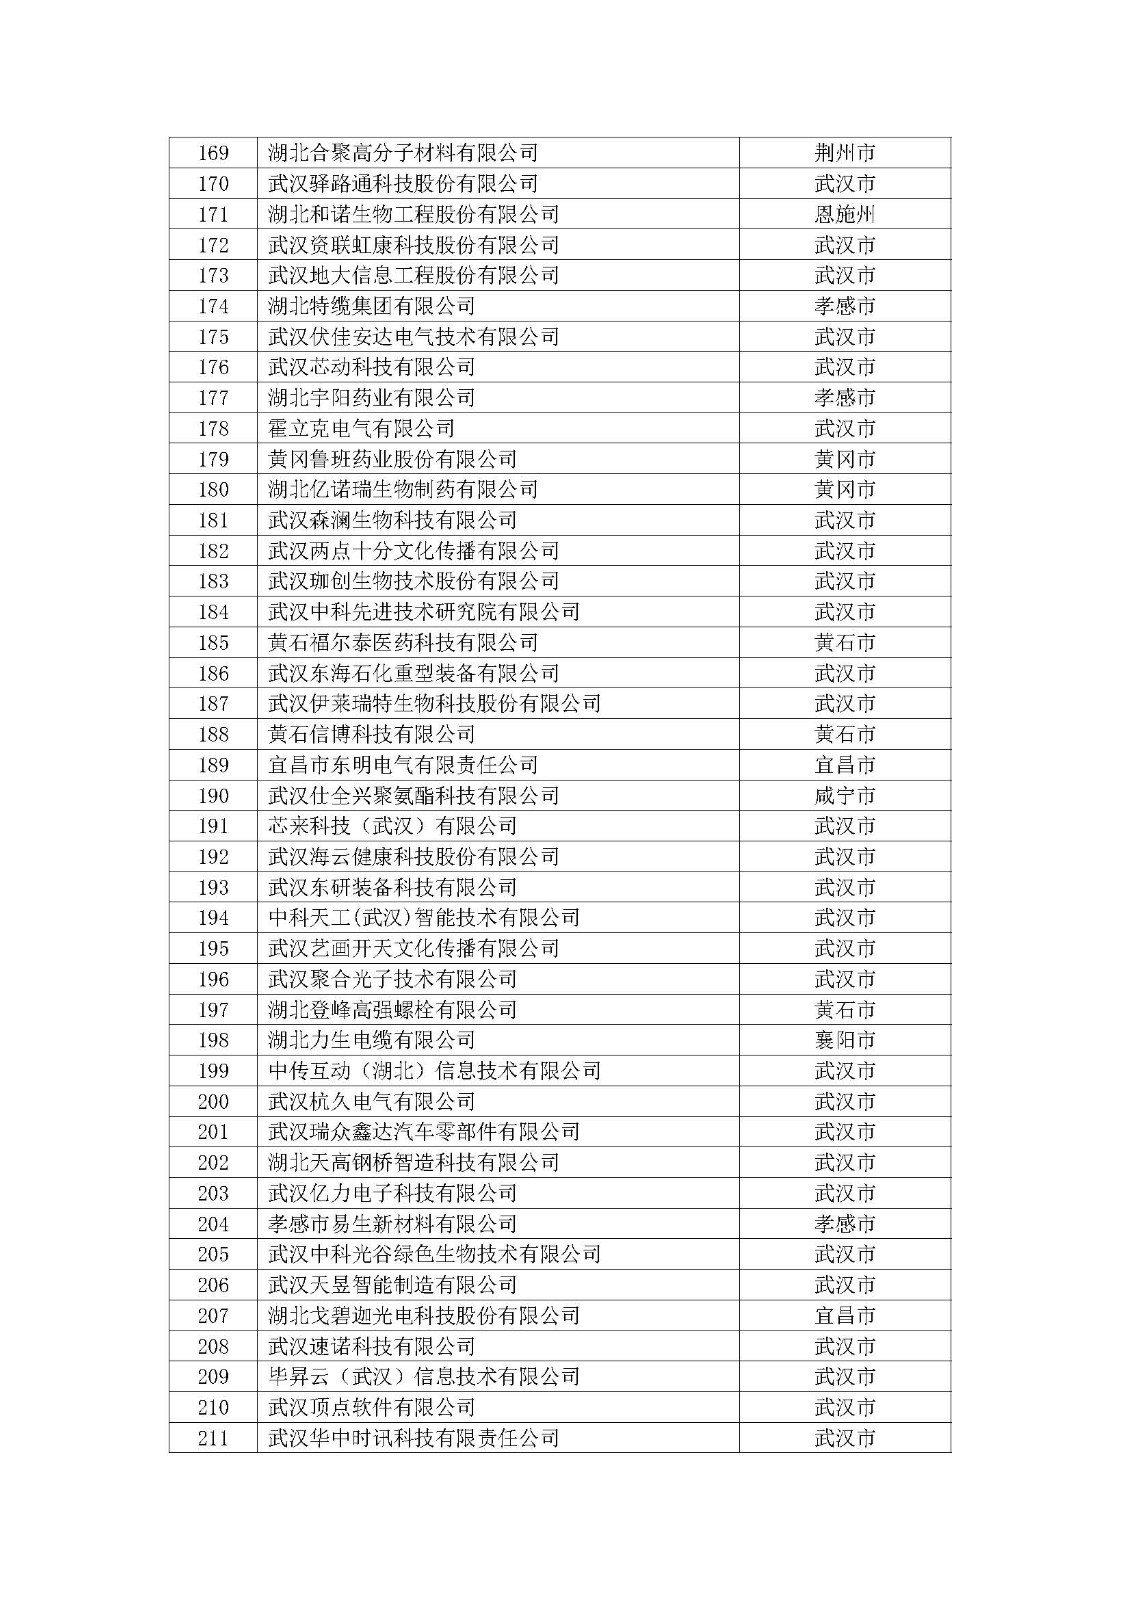 第一批拟入库湖北省科创“新物种”企业名单_页面_06.jpg